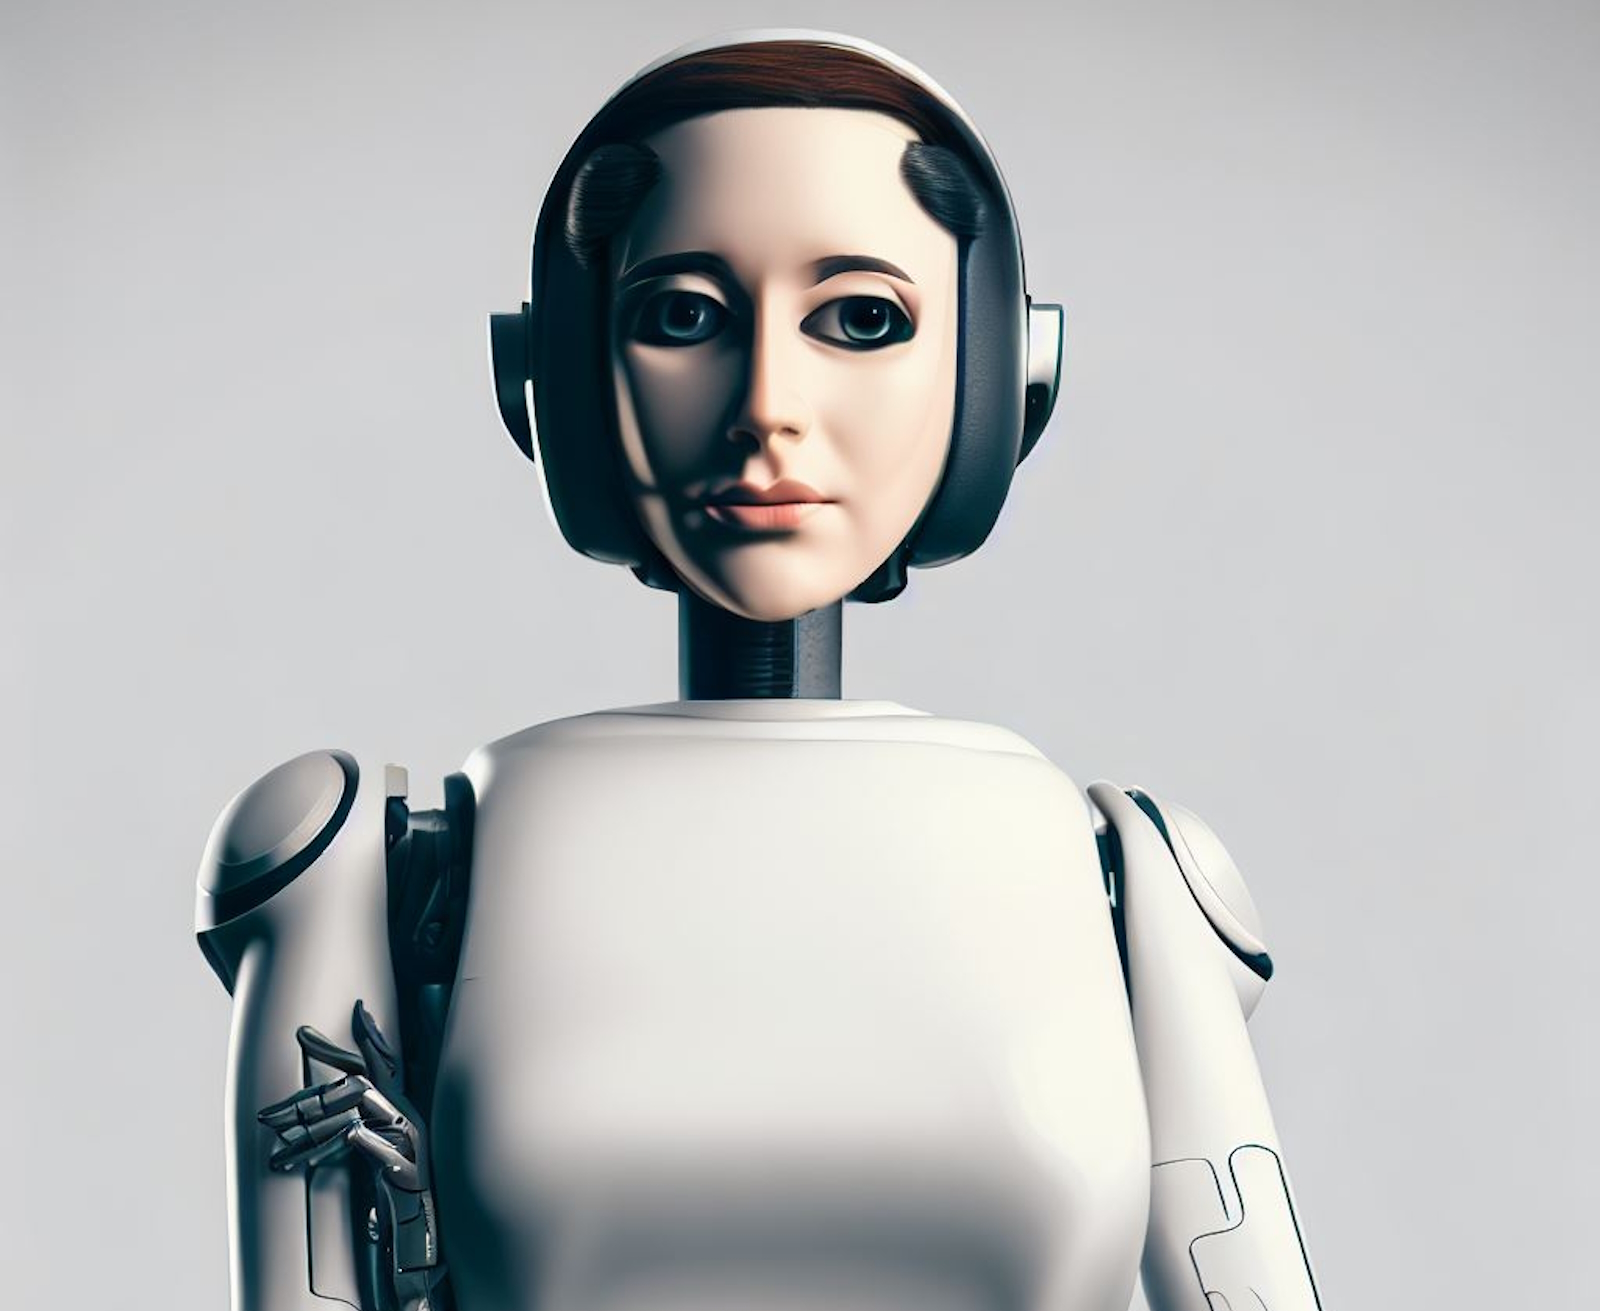 Une IA interactive permettrait de donner de l’autonomie aux robots qui deviendraient des assistants domestiques. © Sylvain Biget, Bing Image Creator